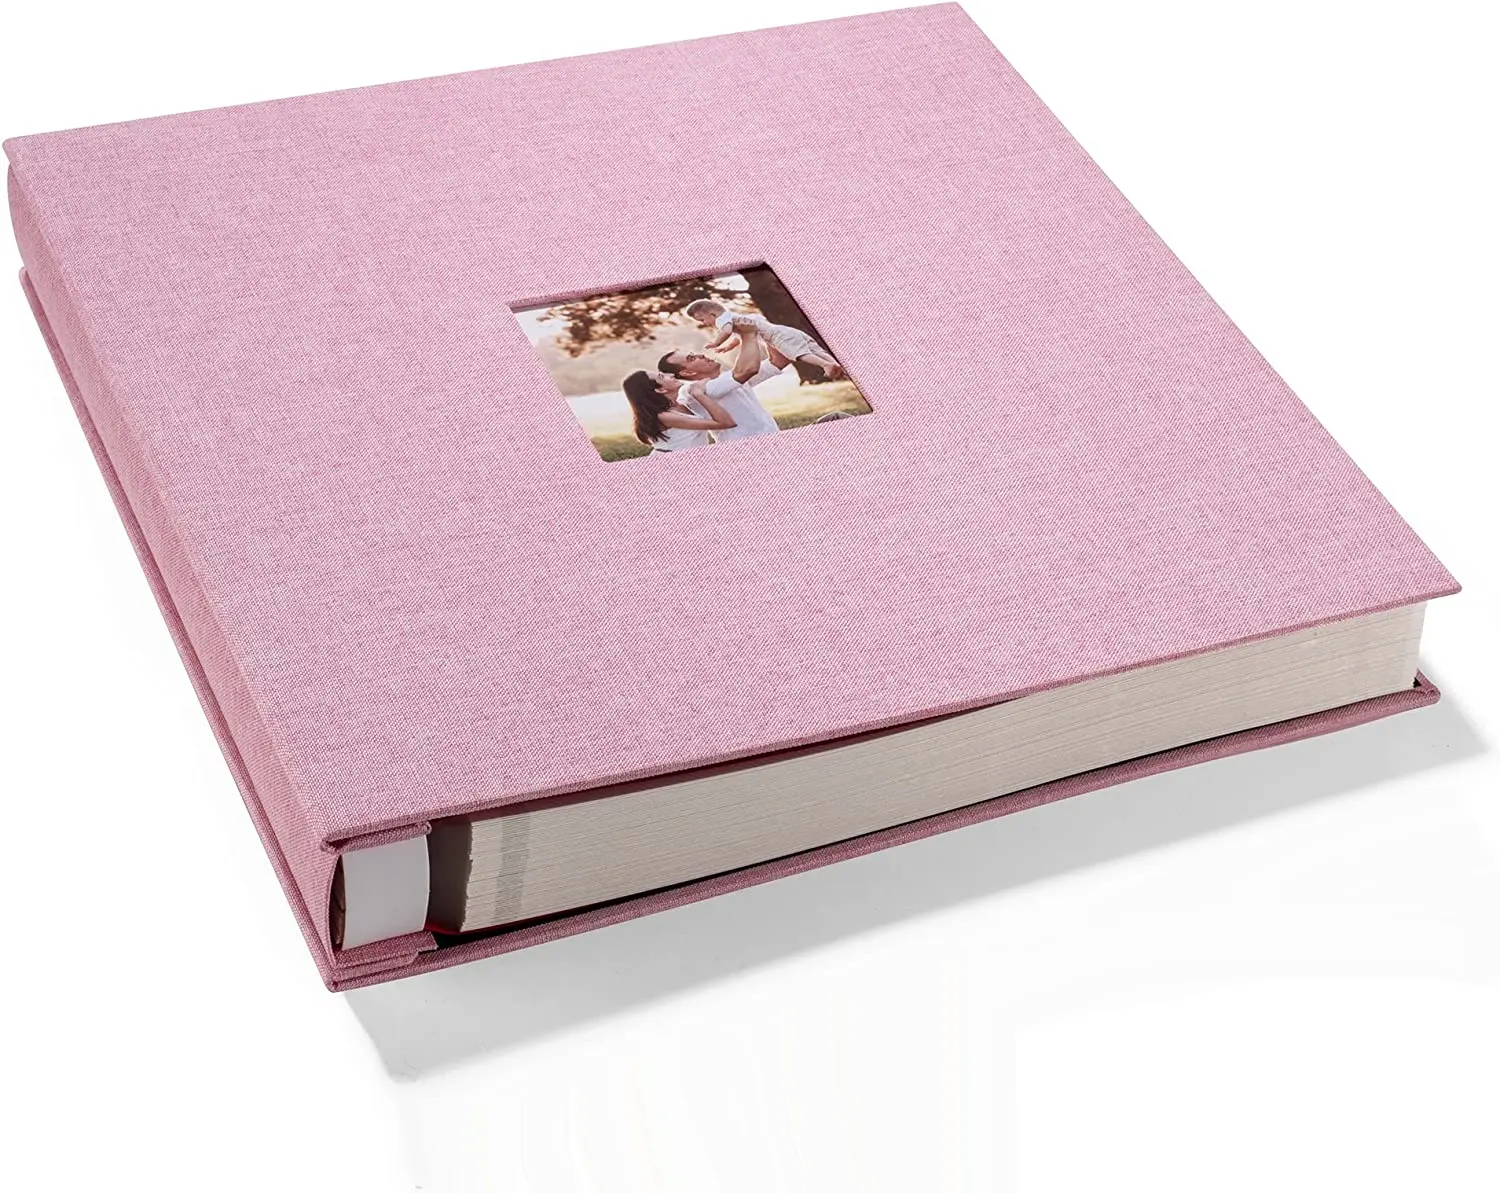 Cubierta de lino personalizada álbum de fotos grande autoadhesivo álbum de recortes magnético álbum de fotos DIY álbum de recortes álbumes de fotos